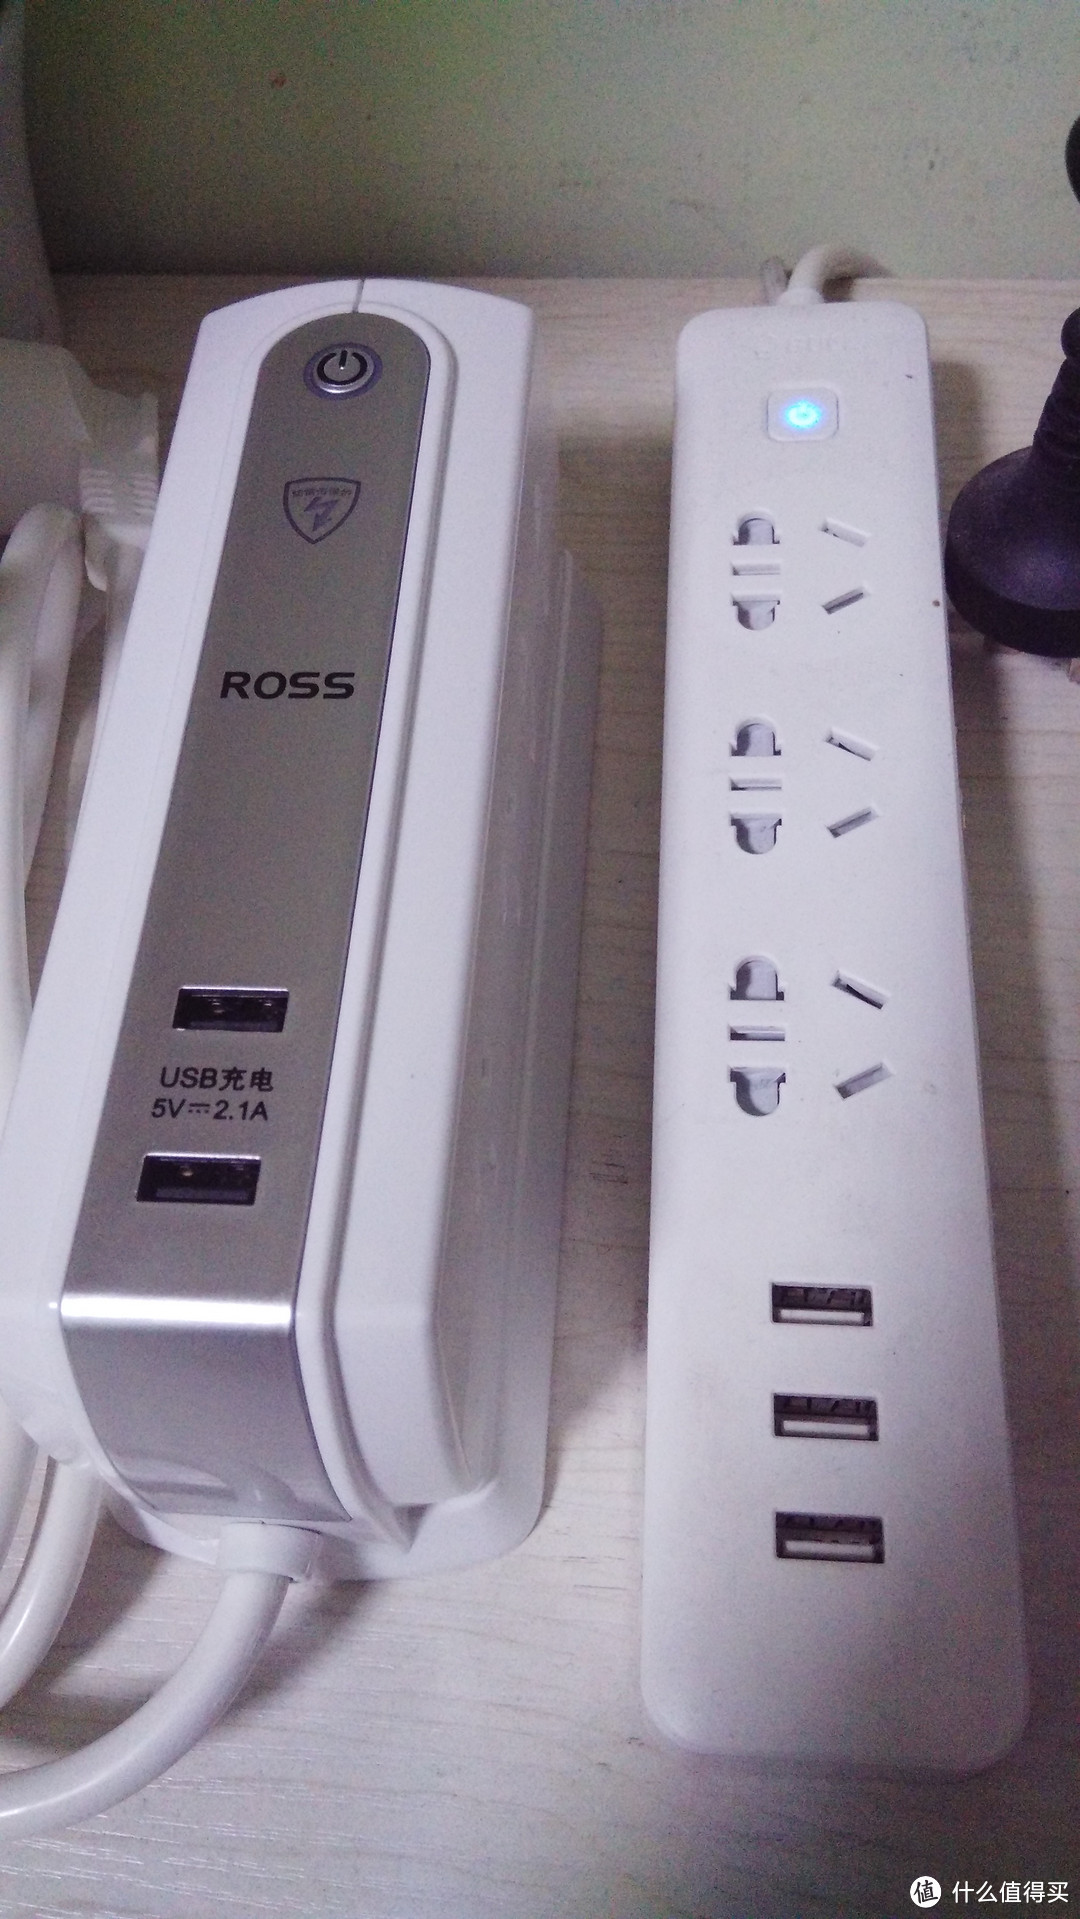 罗尔思 一个桌面型插座的简单使用感受